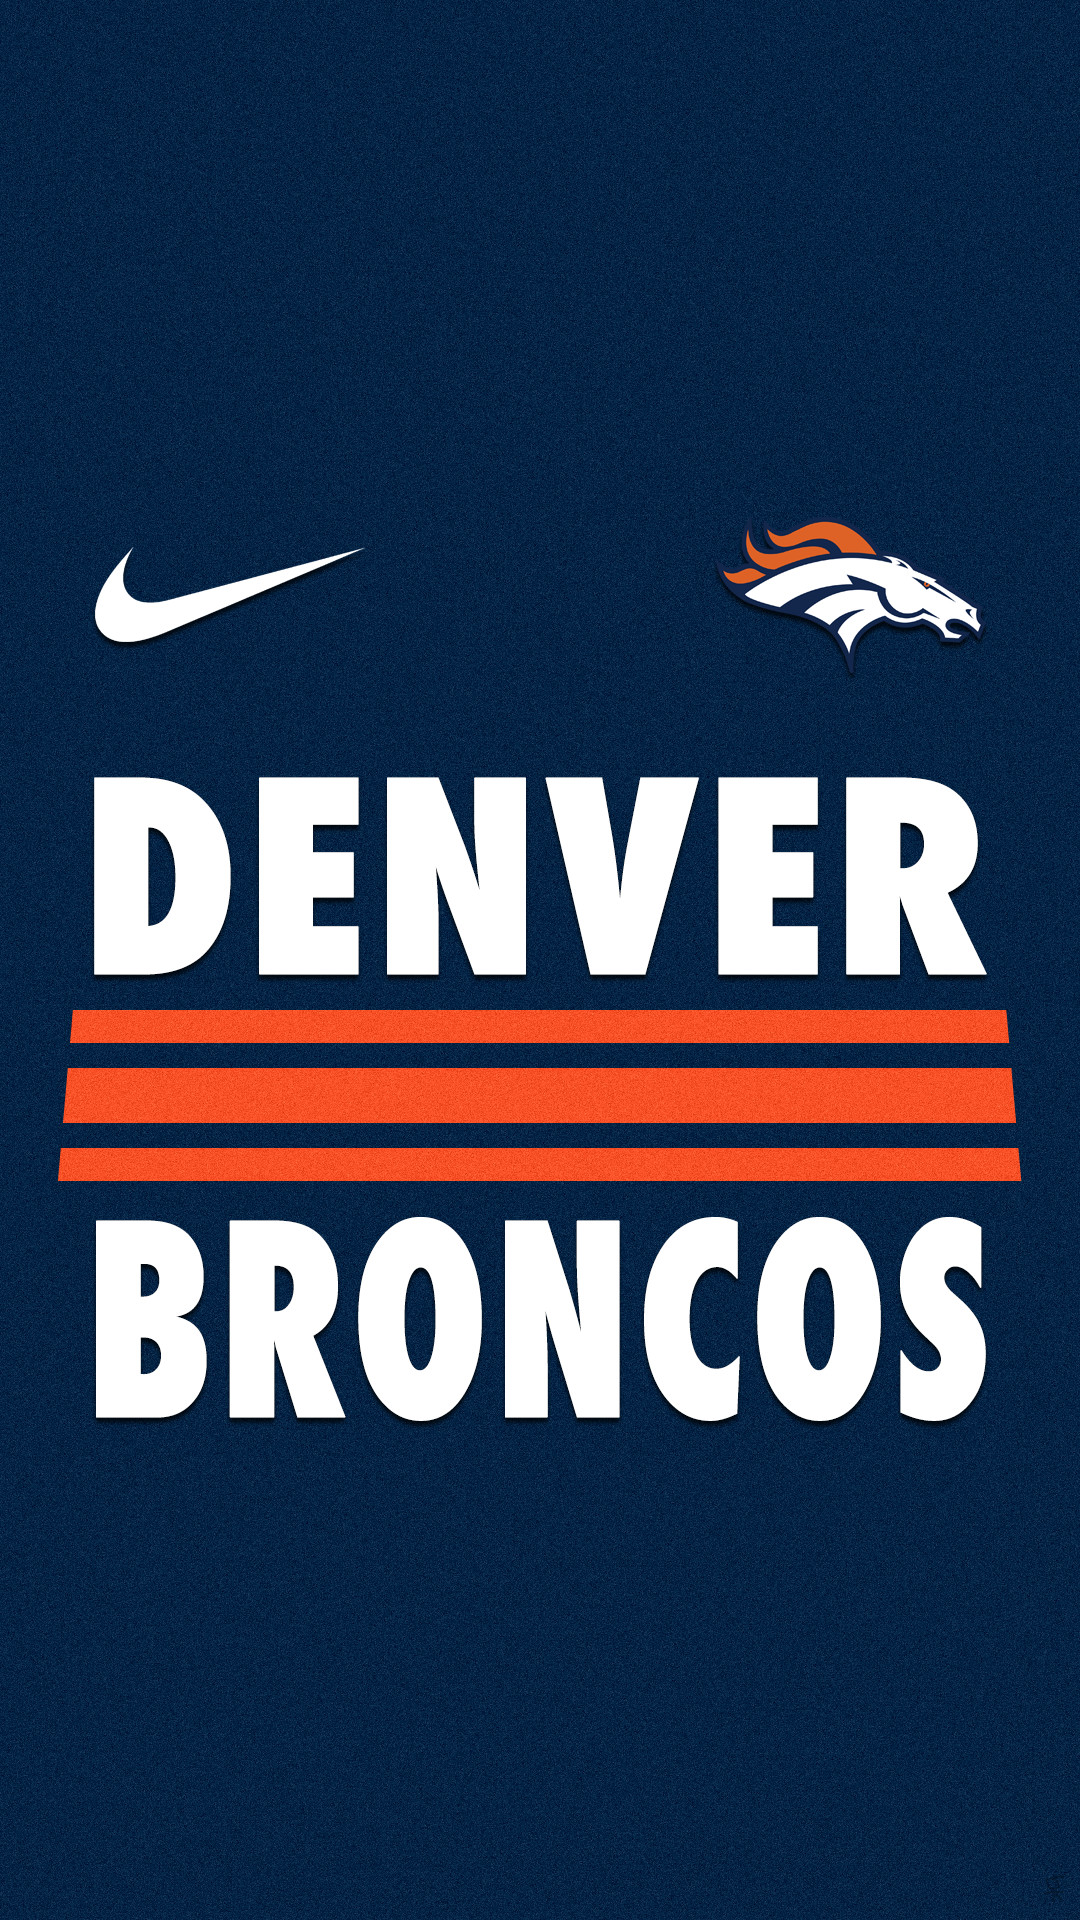 67 Denver Broncos Live